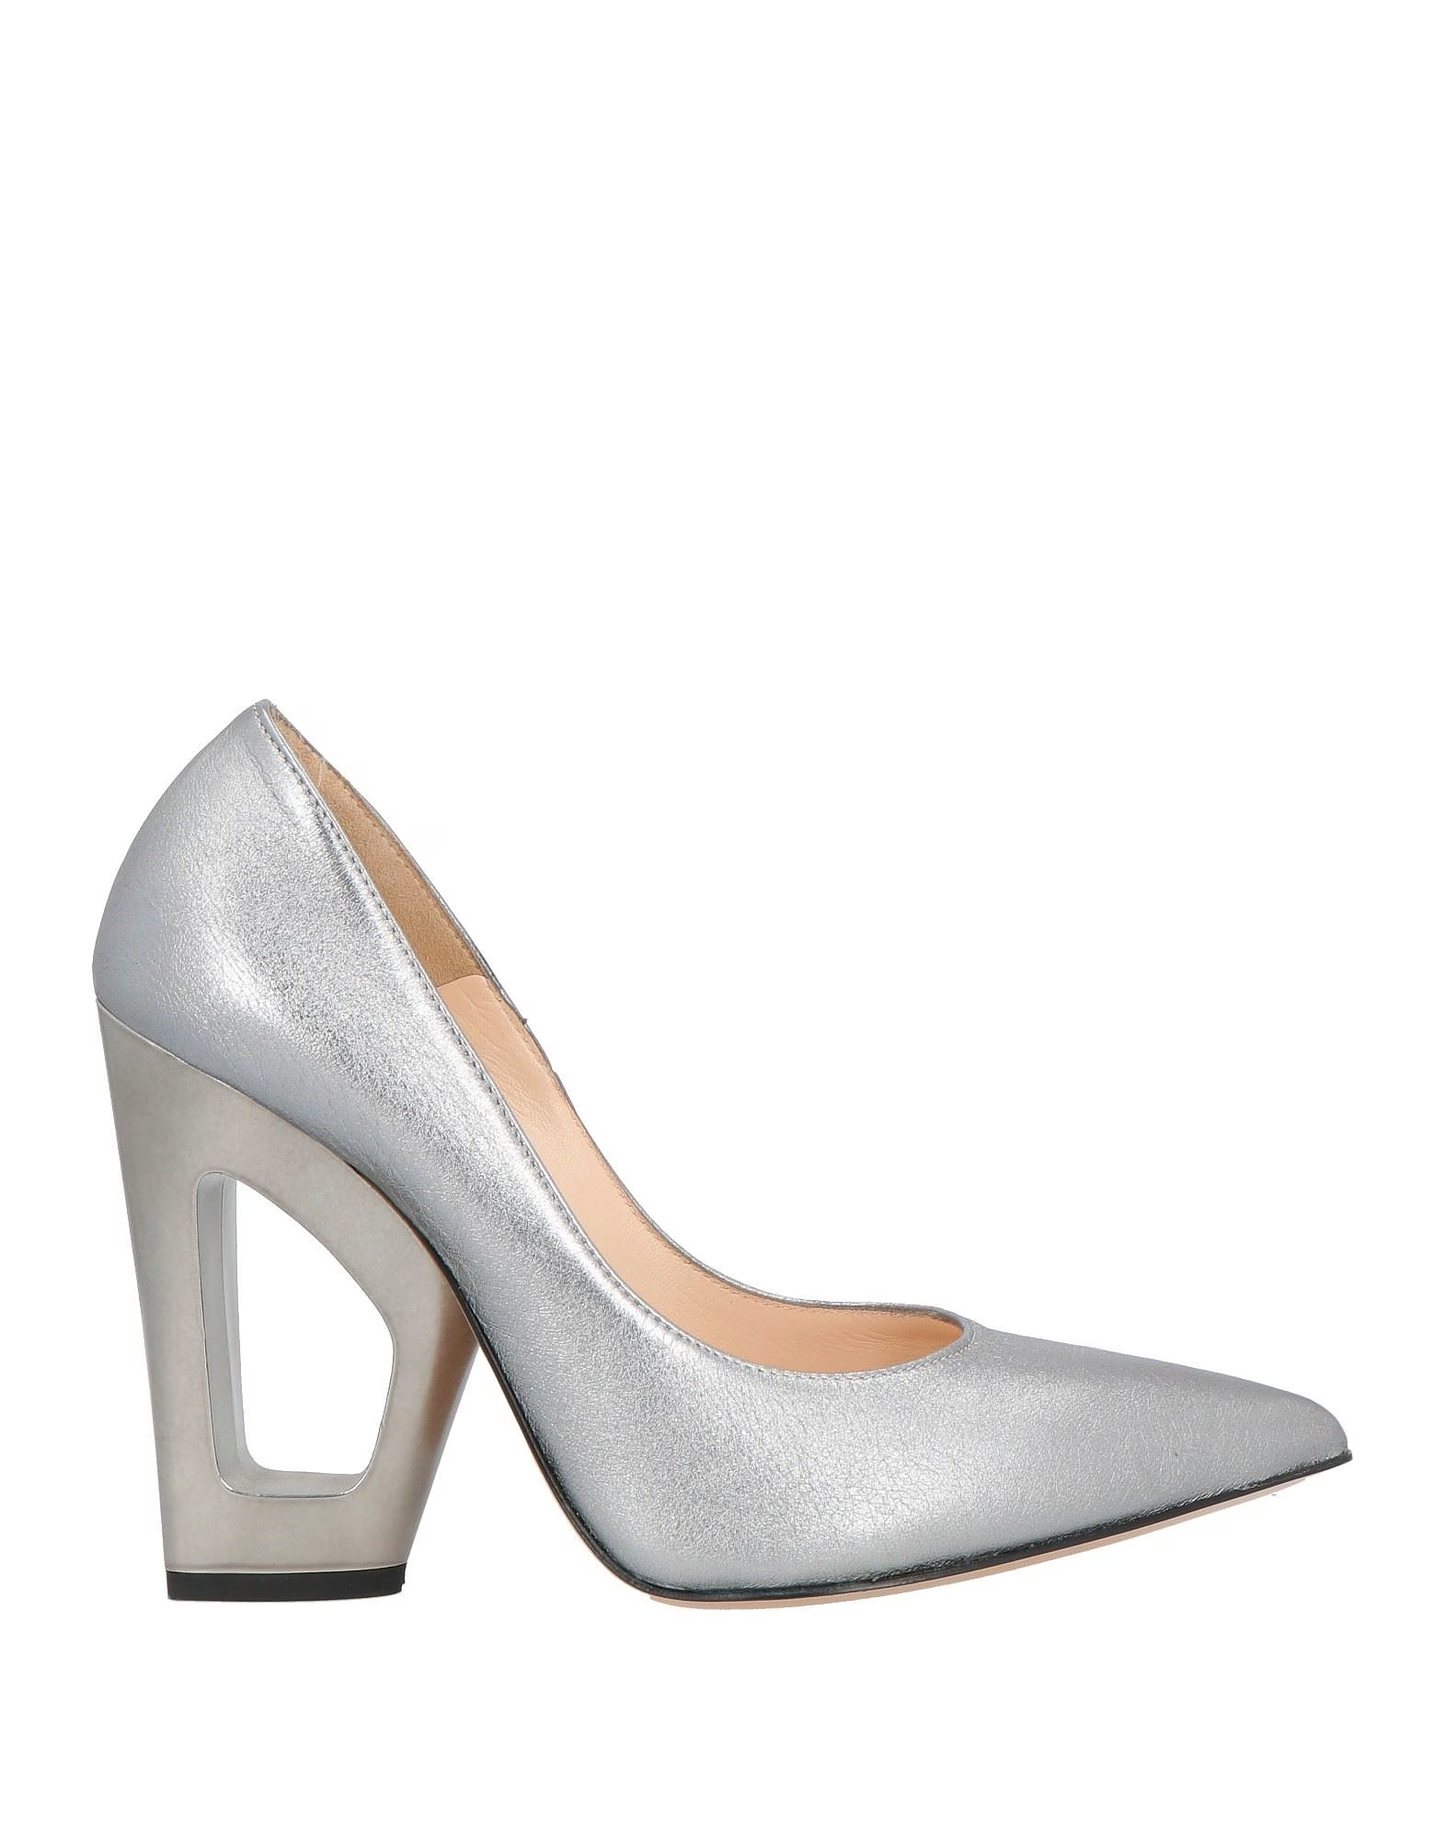 Parioli Shoes - Heels - Silver